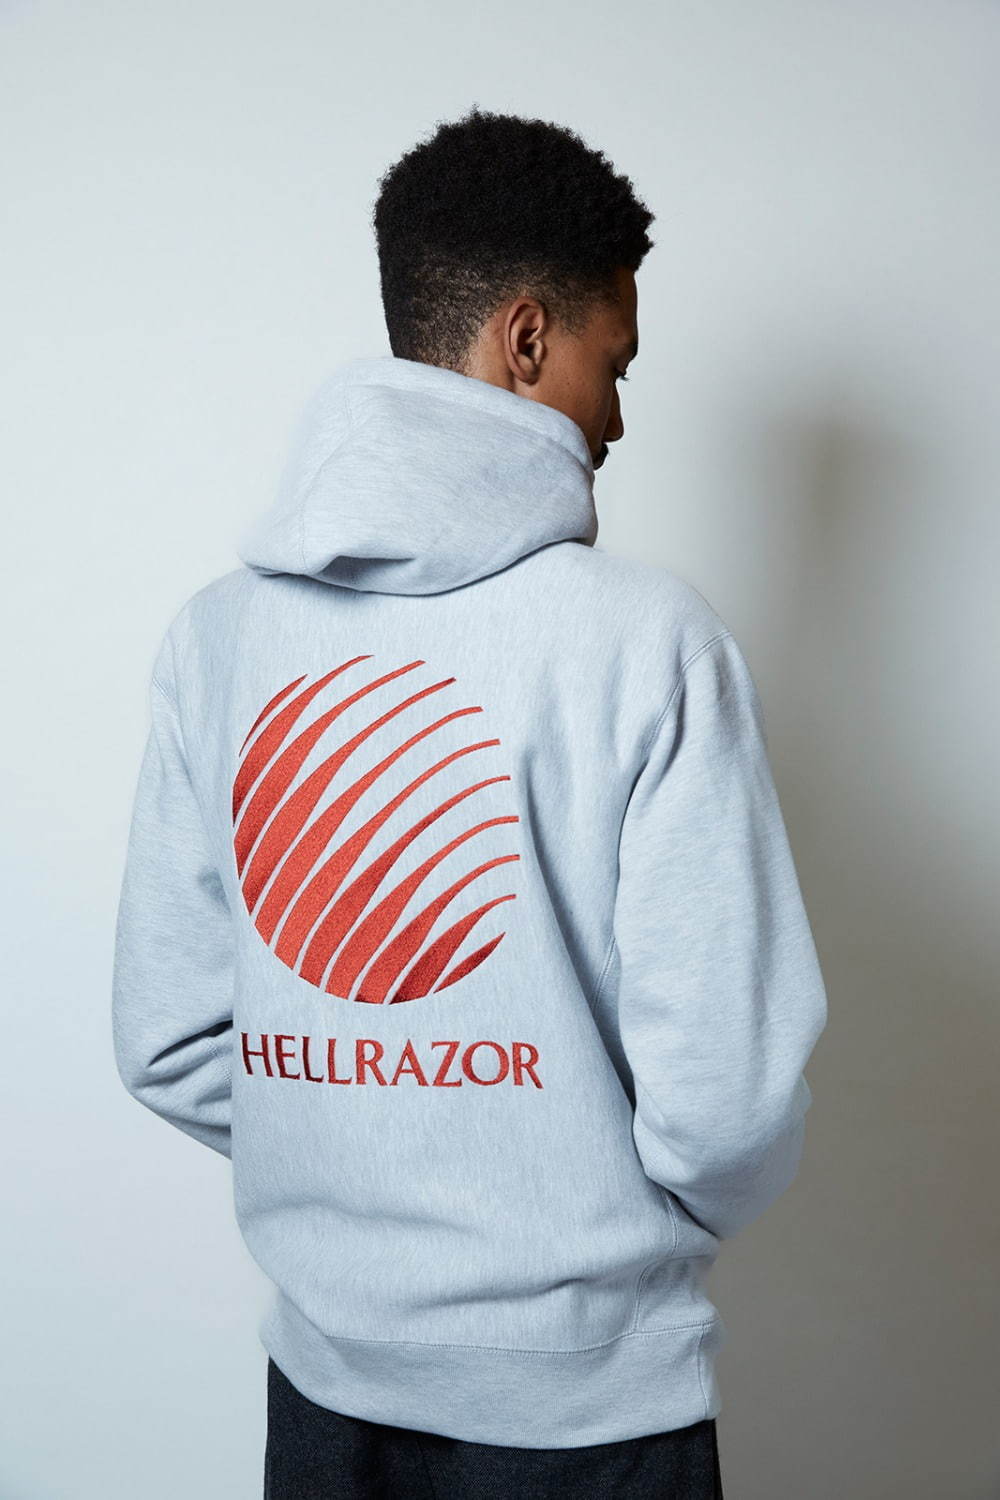 ヘルレイザー(Hellrazor) 2020-21年秋冬メンズコレクション  - 写真4